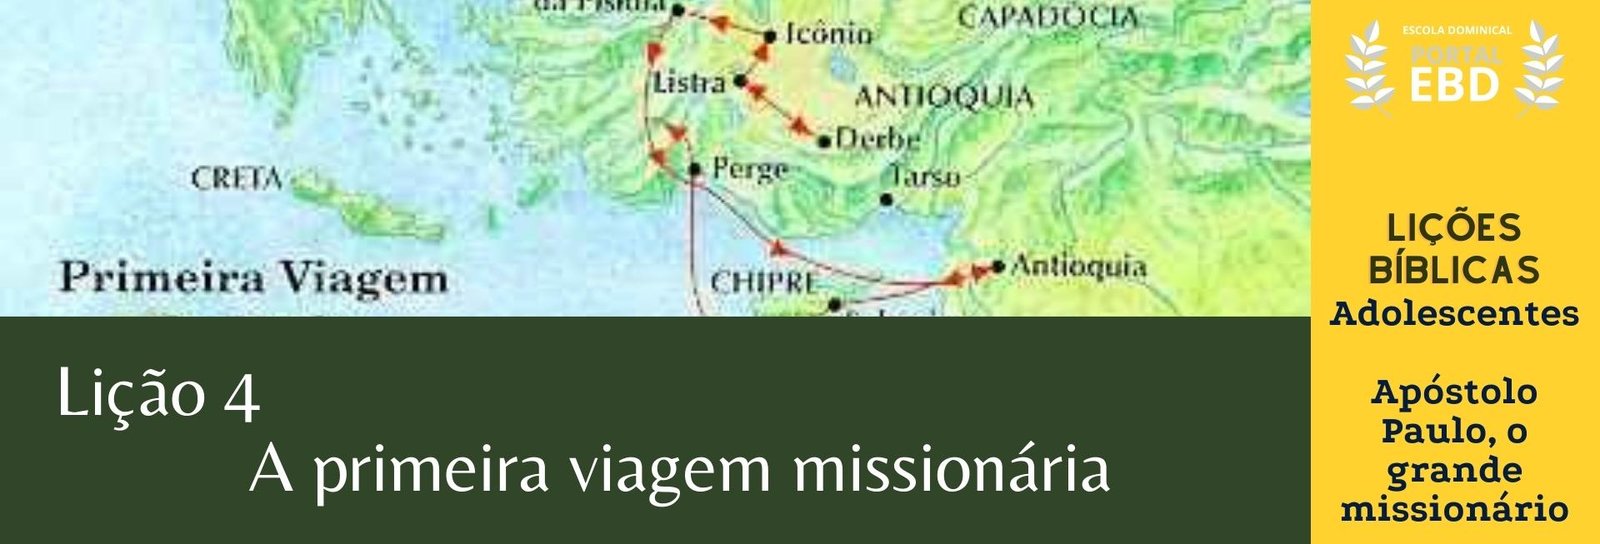 Lição 4 - A primeira viagem missionária - SLIDES E VIDEOAULAS 